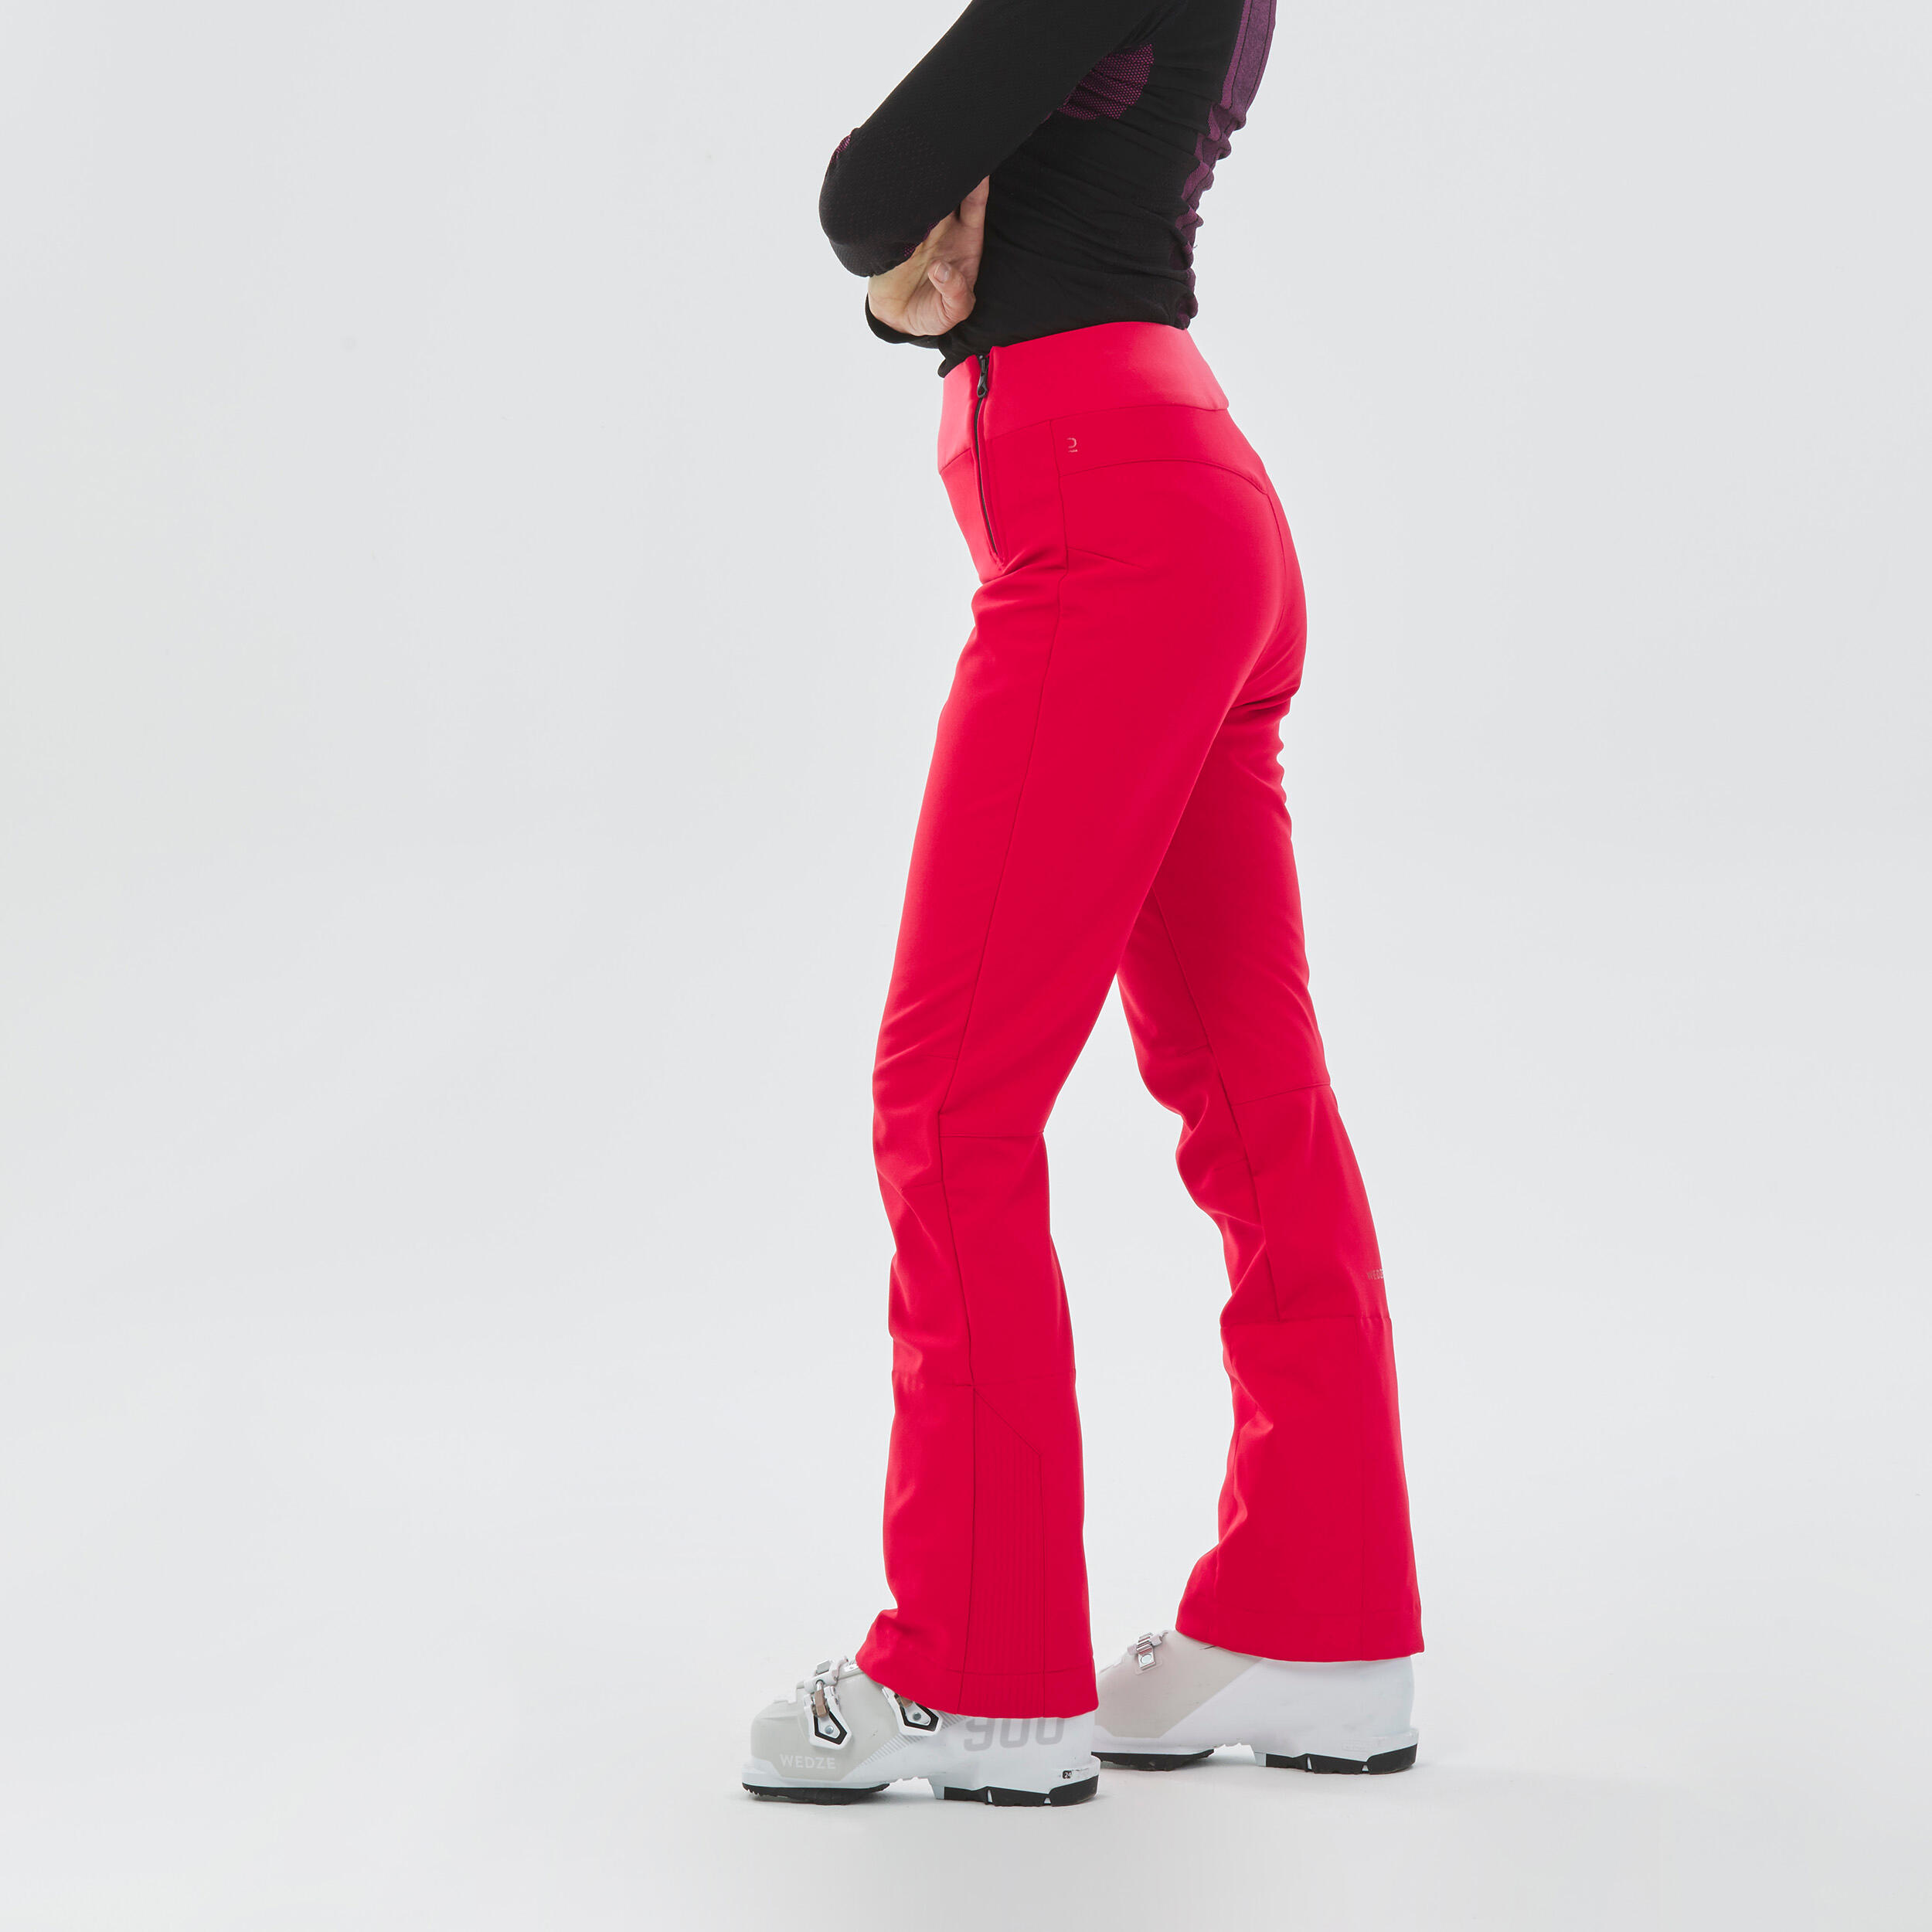 Women's Ski Trousers 500 Slim - Red WEDZE